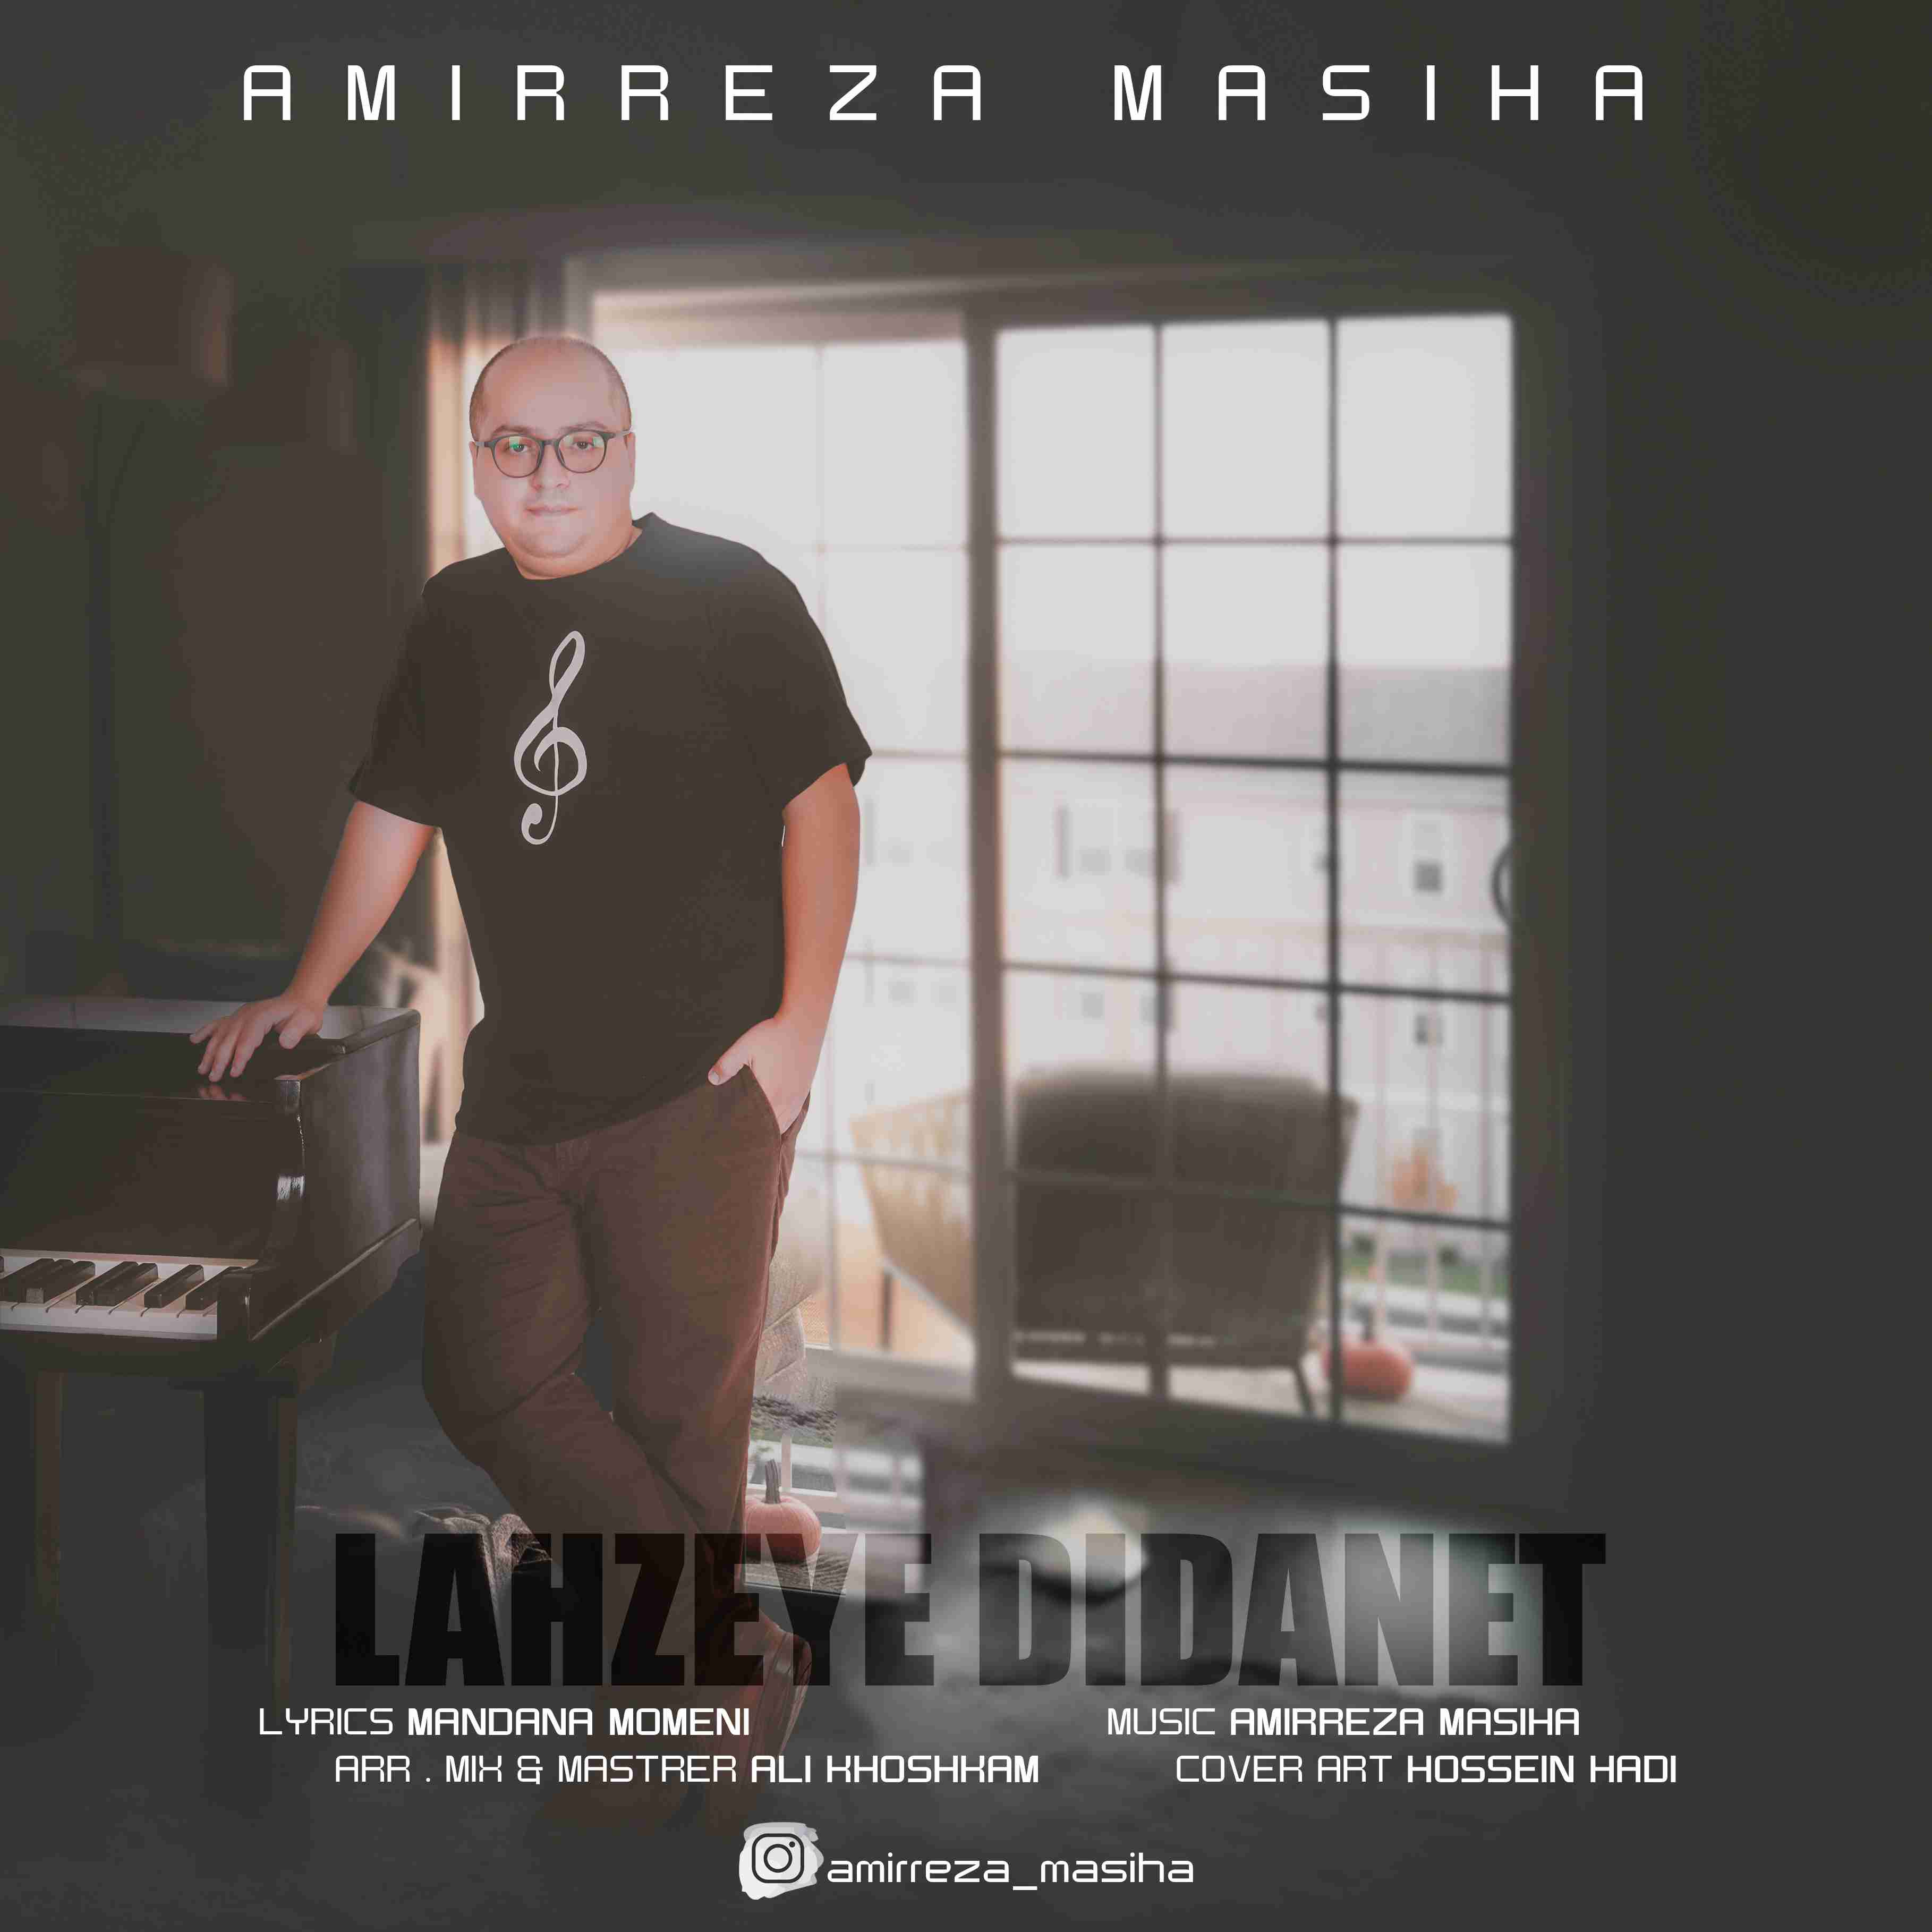  دانلود آهنگ جدید امیررضا مسیحا - لحظه دیدنت | Download New Music By Amirreza Masiha - Lahzeye Didanet